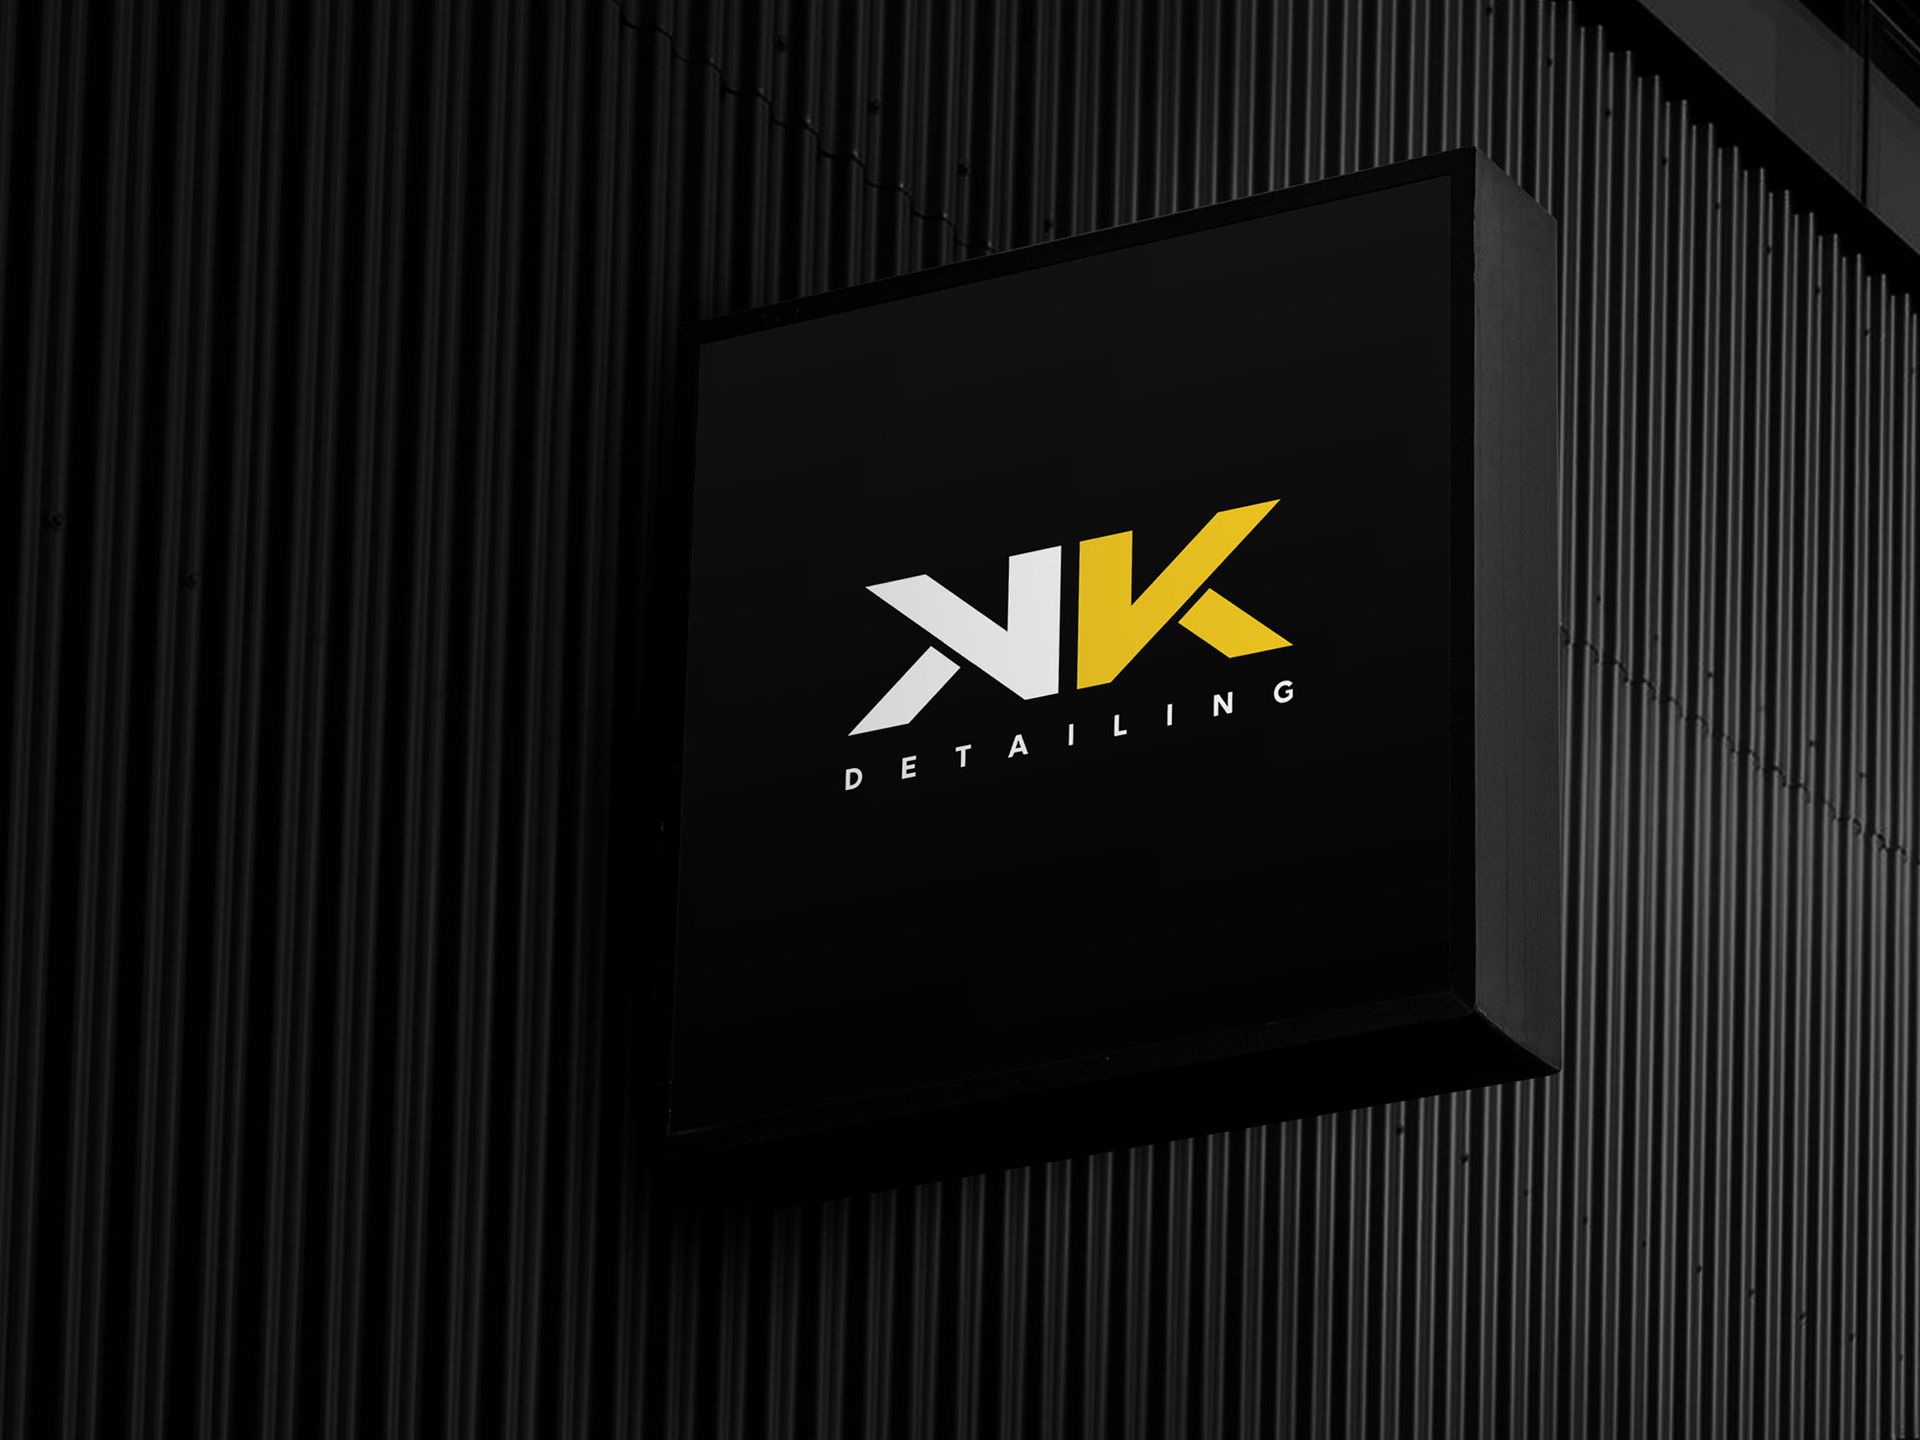 KK Detailing Logo Design on side shop sign